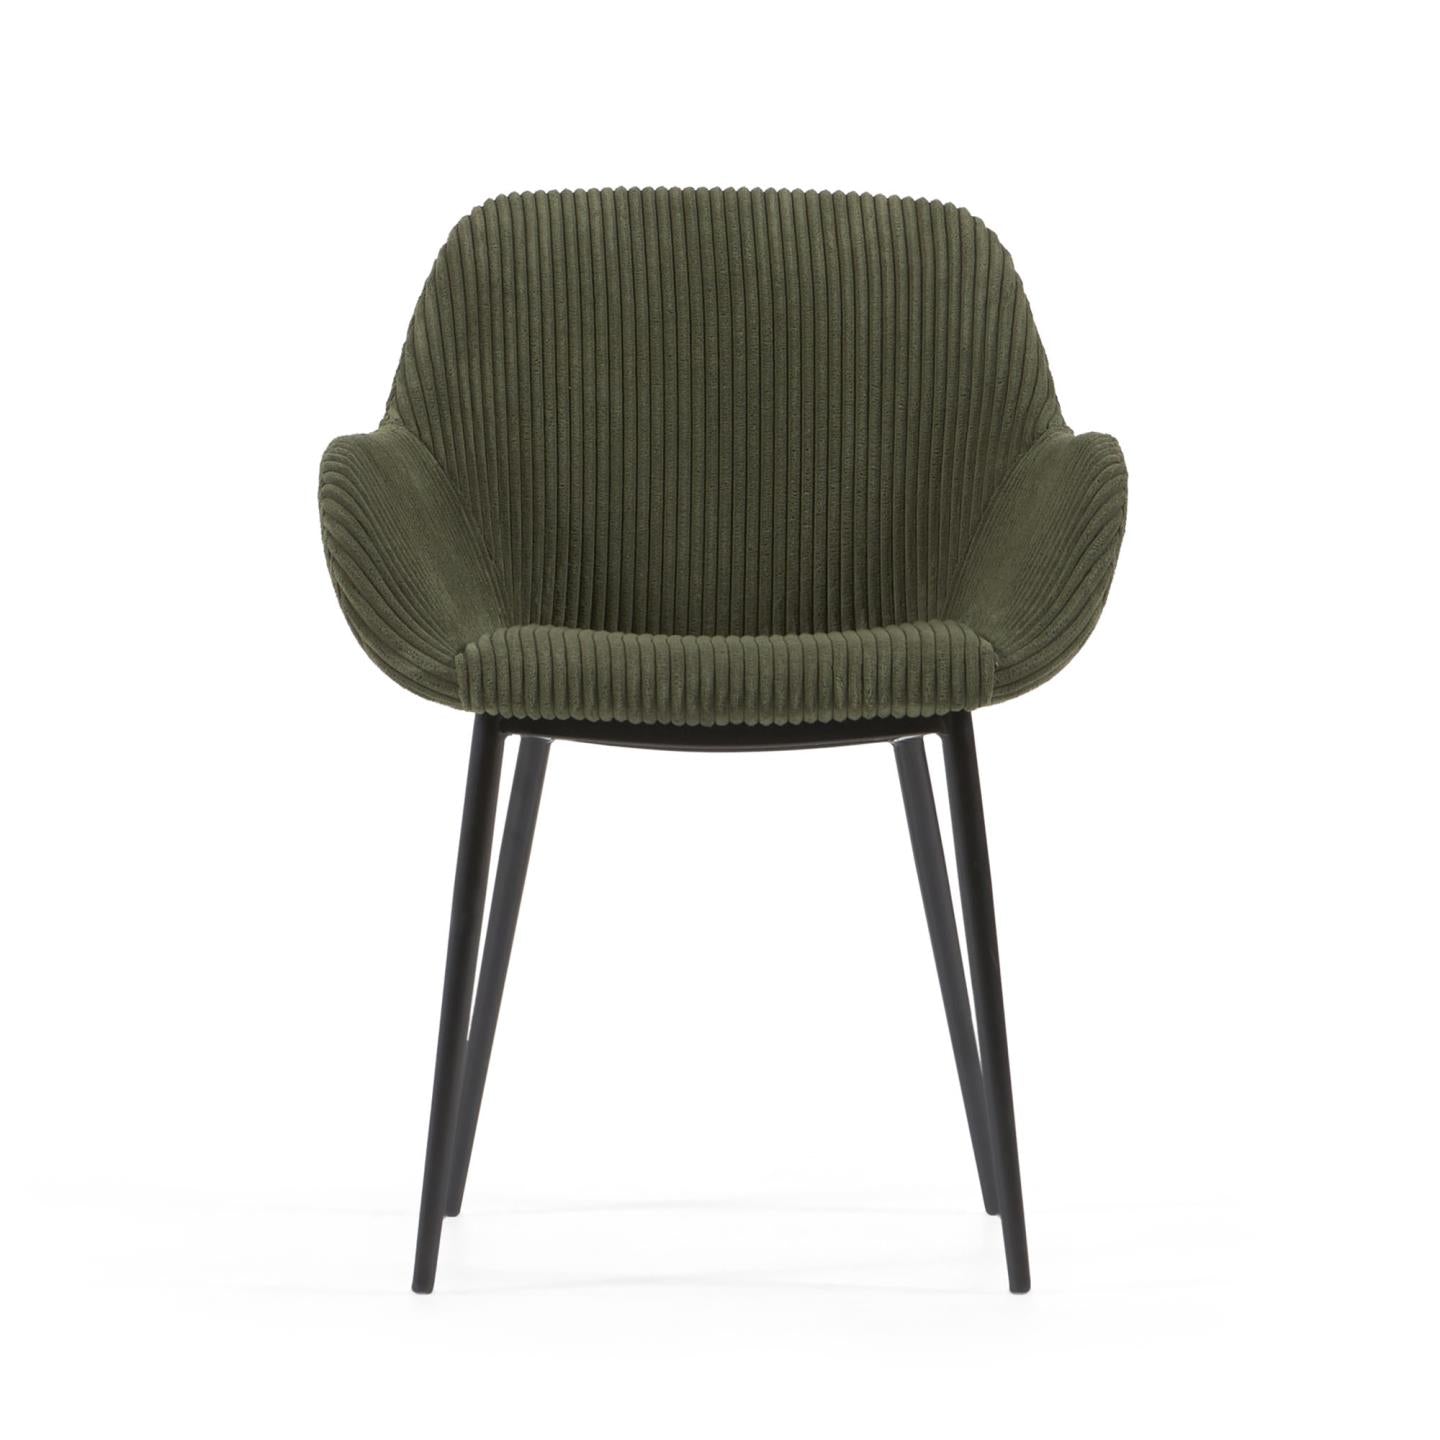 Konna szék sötétzöld, széles varrású kordbársonyból acél lábakkal, fekete festett kivitelben.